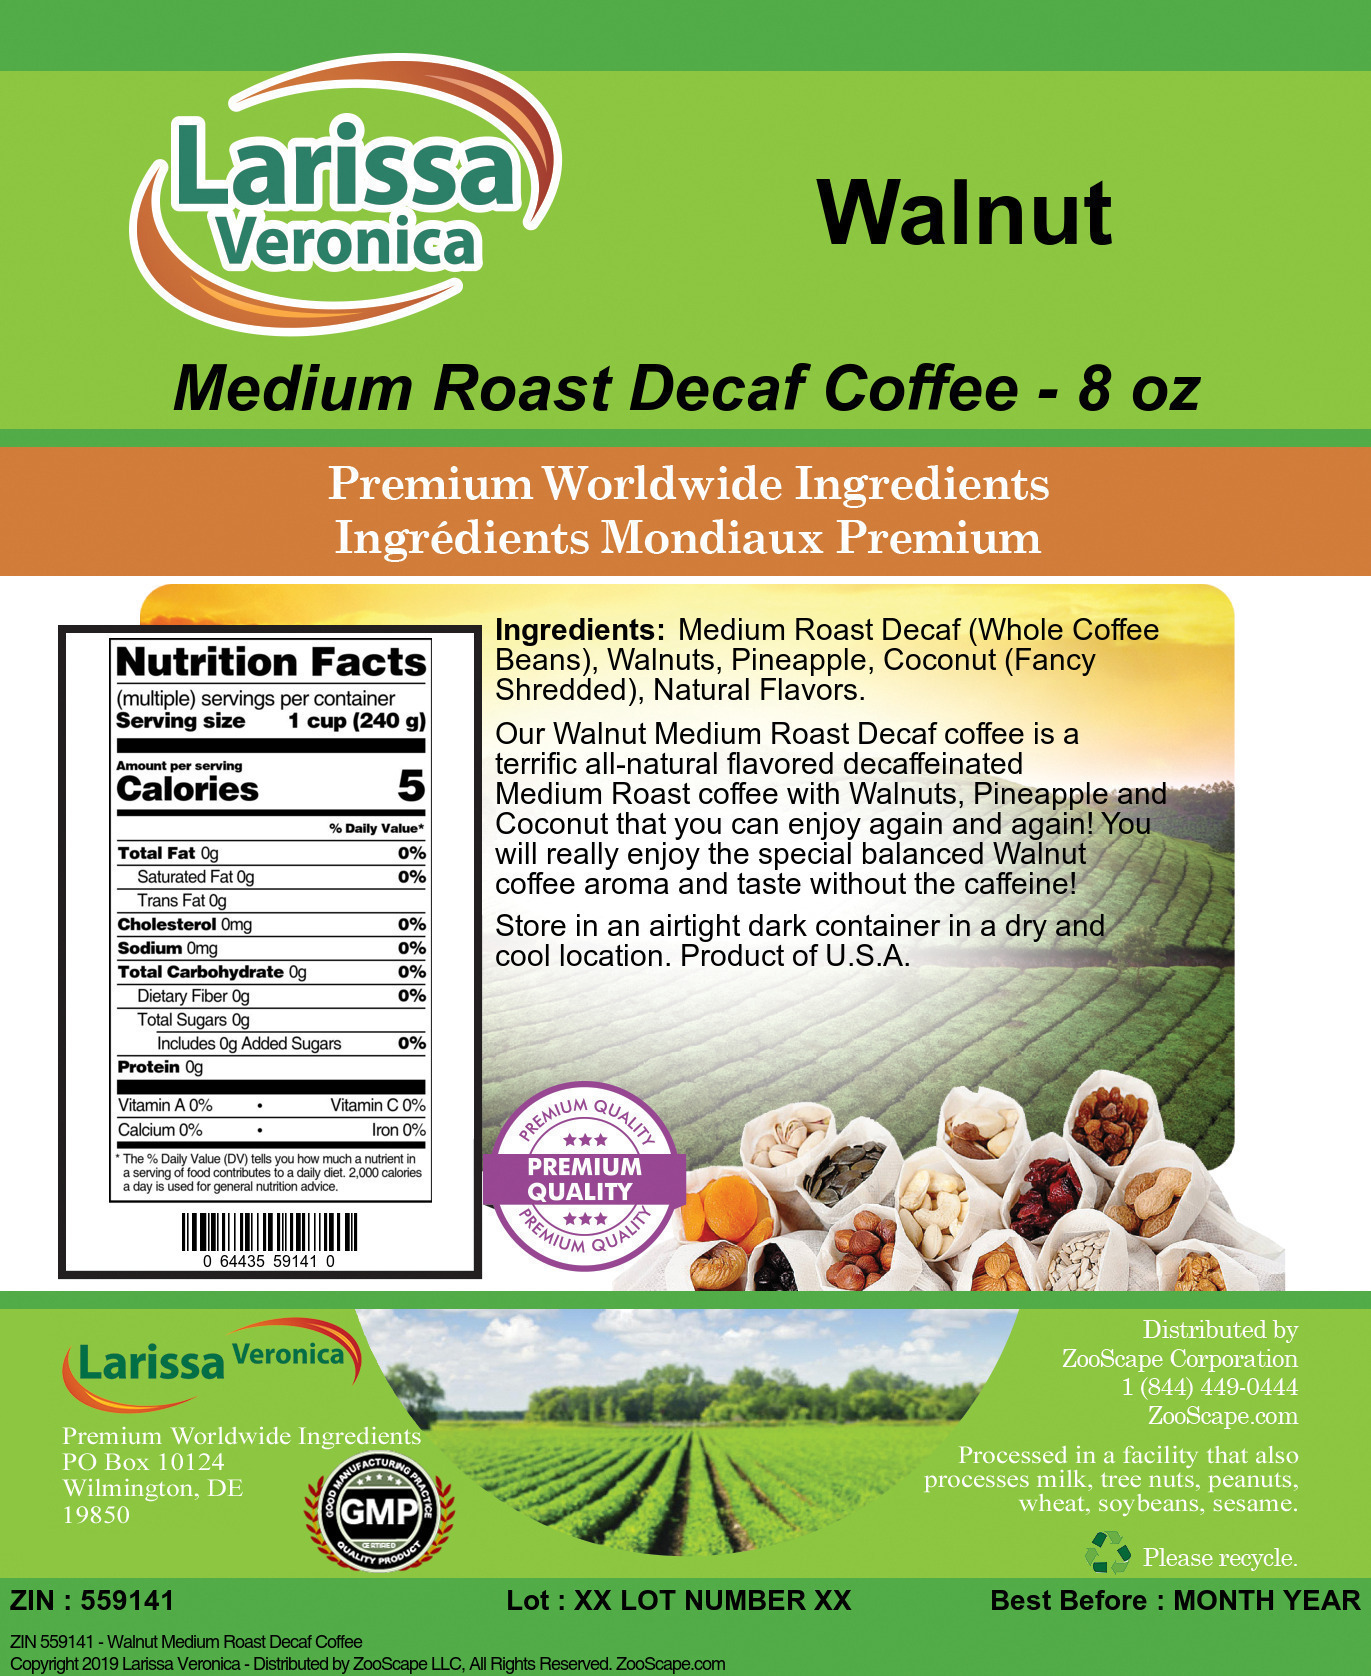 Walnut Medium Roast Decaf Coffee - Label